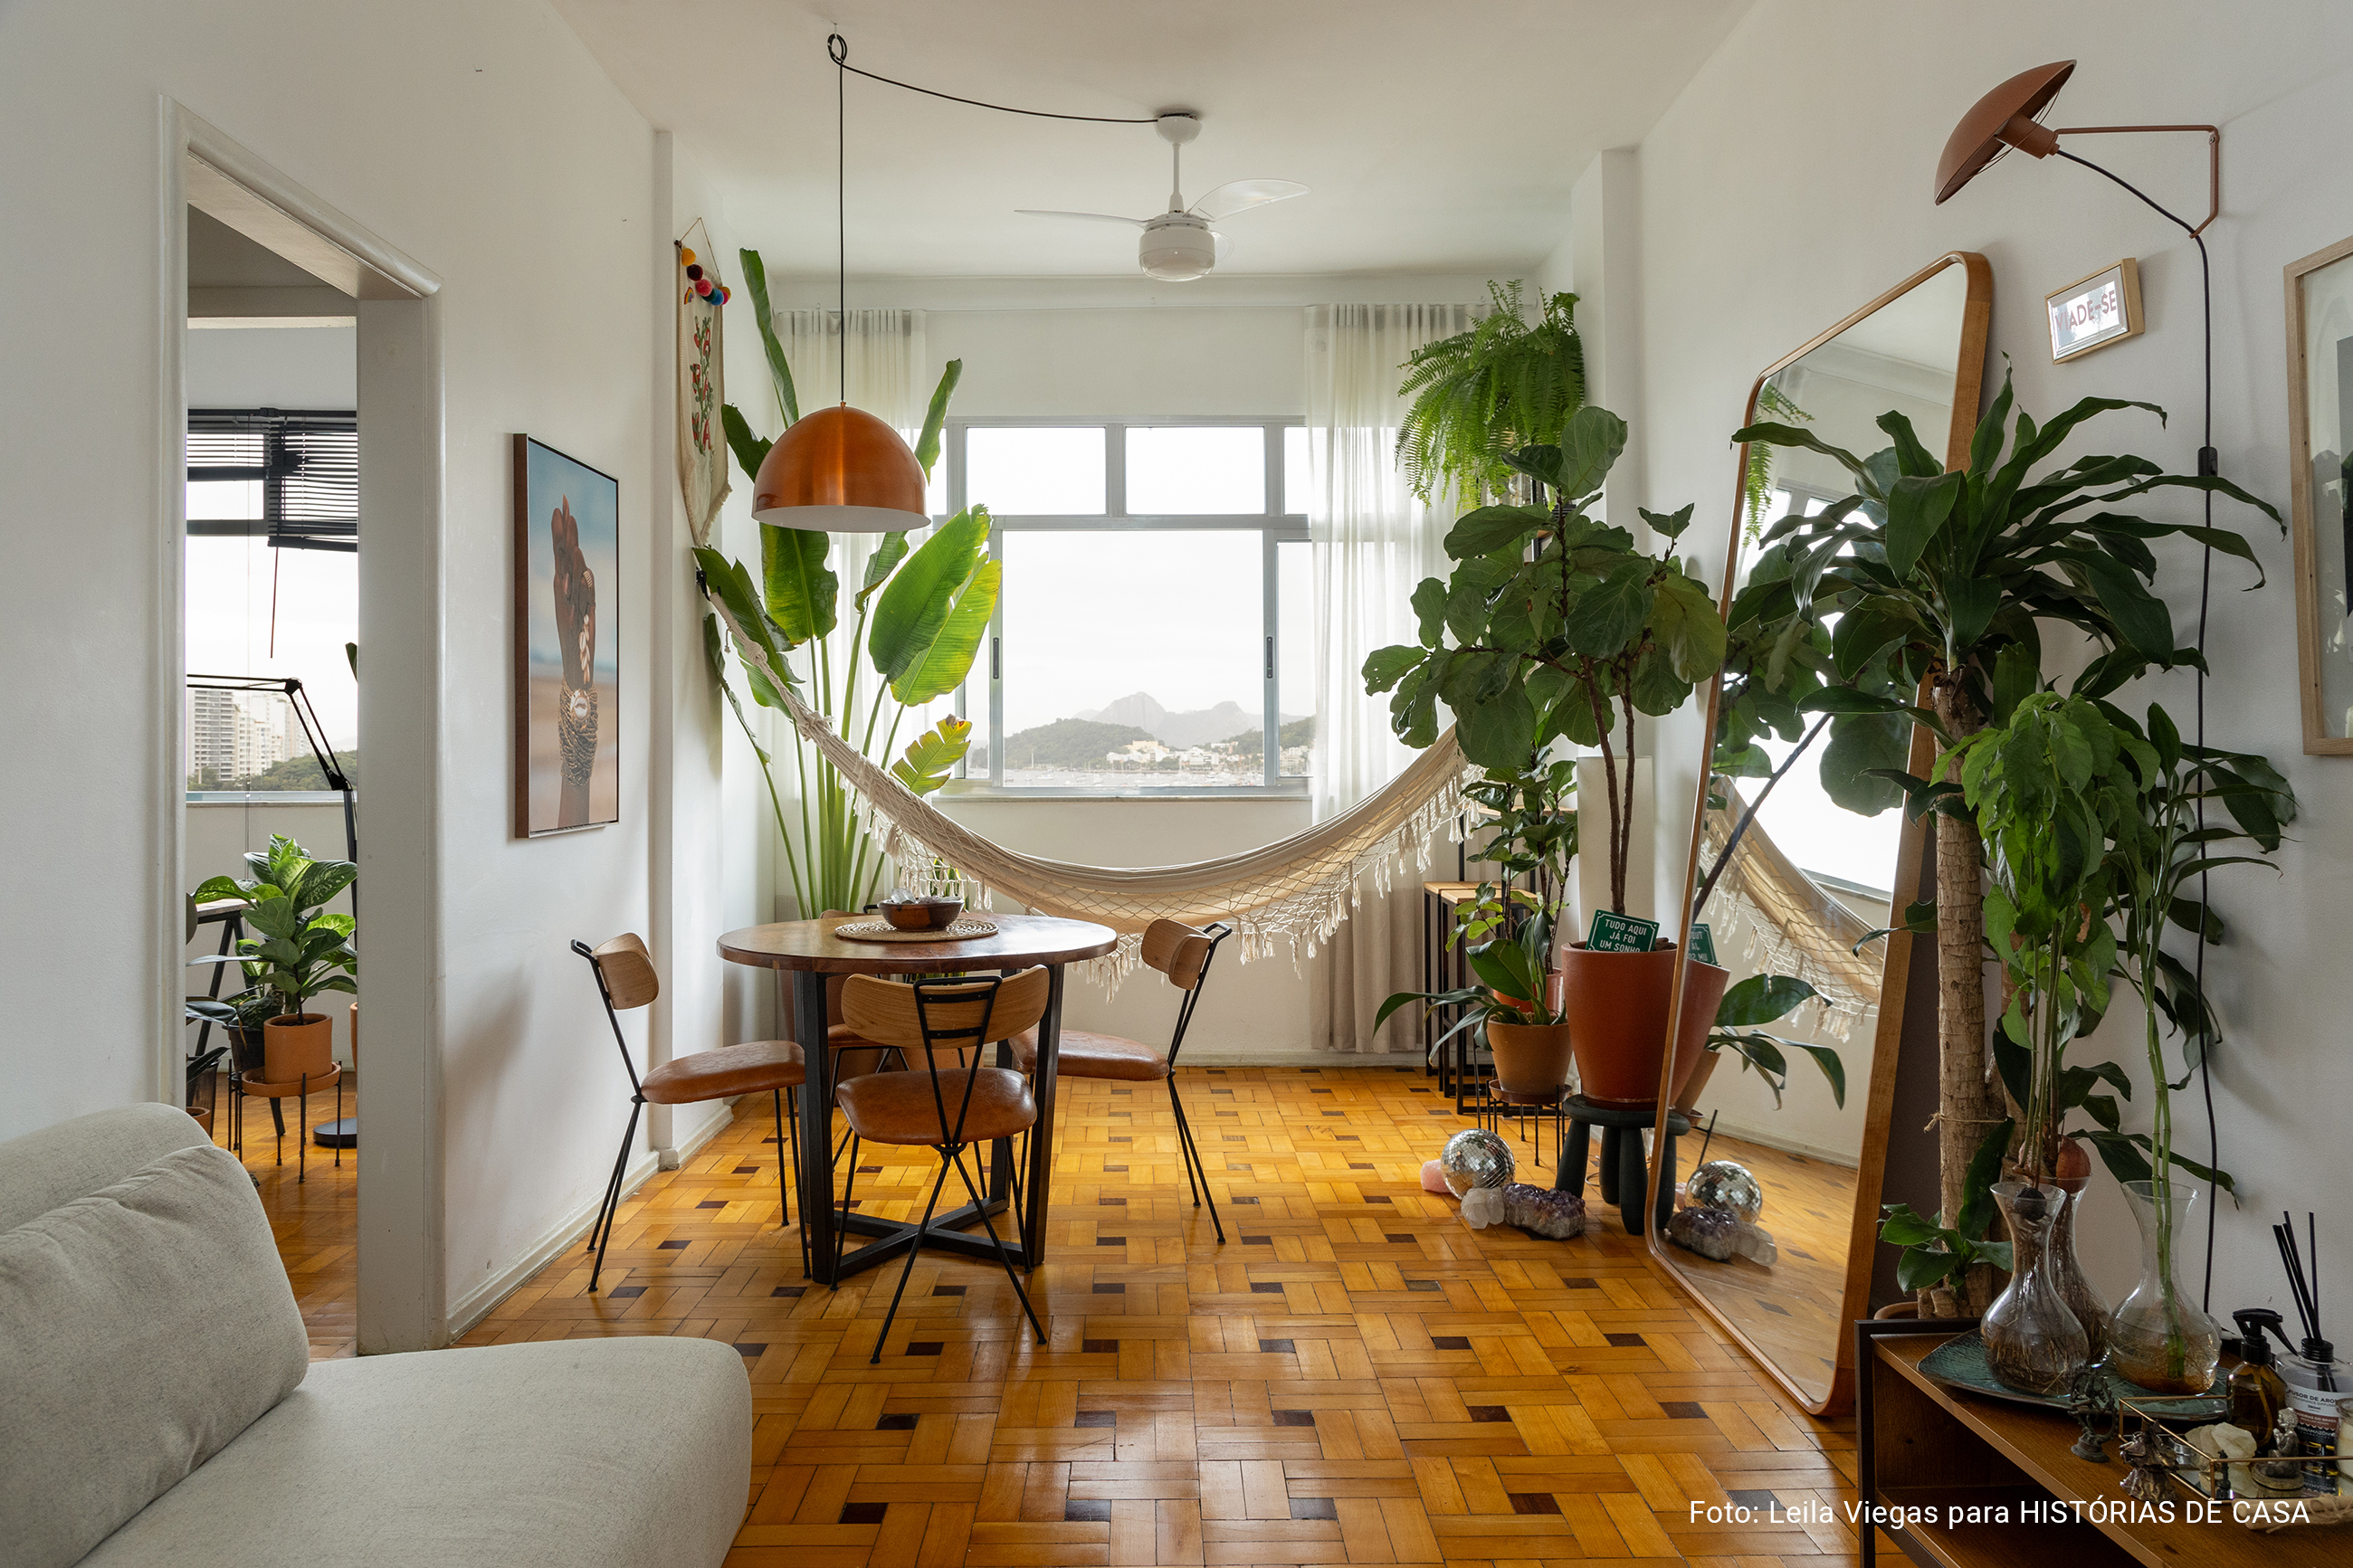 Apartamento com vista para a praia no Rio de Janeiro tem piso de tacos e decoração com plantas.